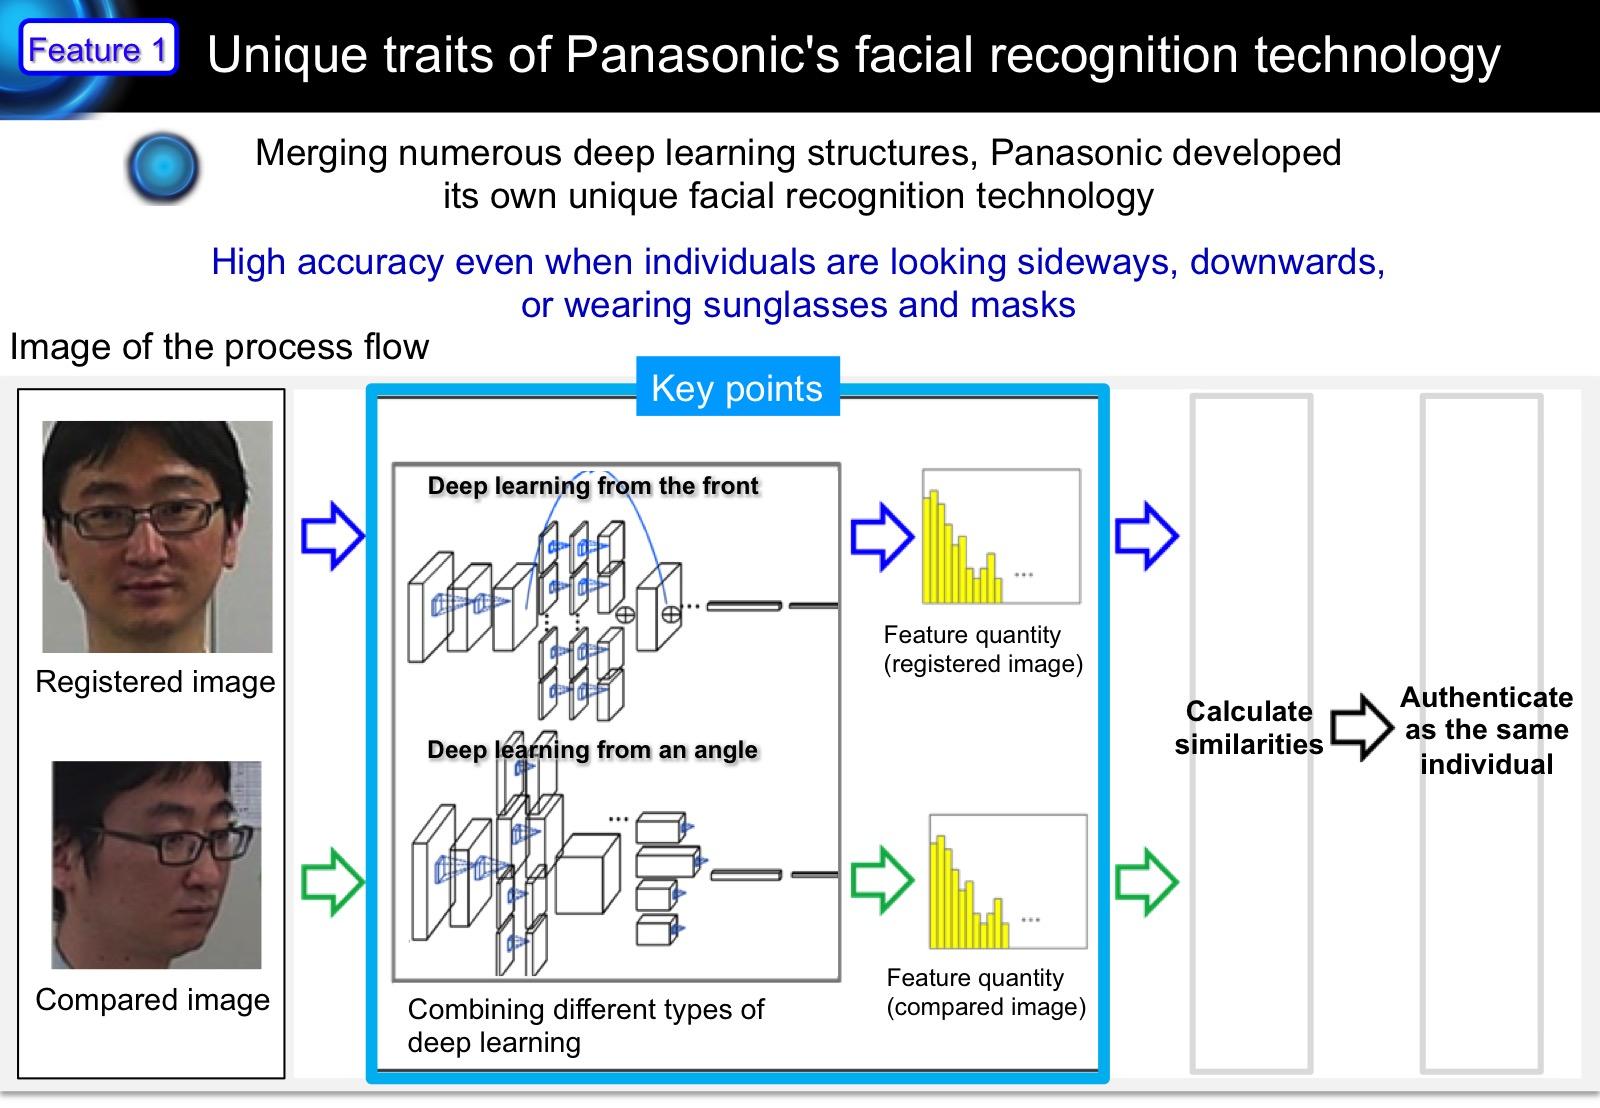 image: Unique traits of Panasonic's facial recognition technology